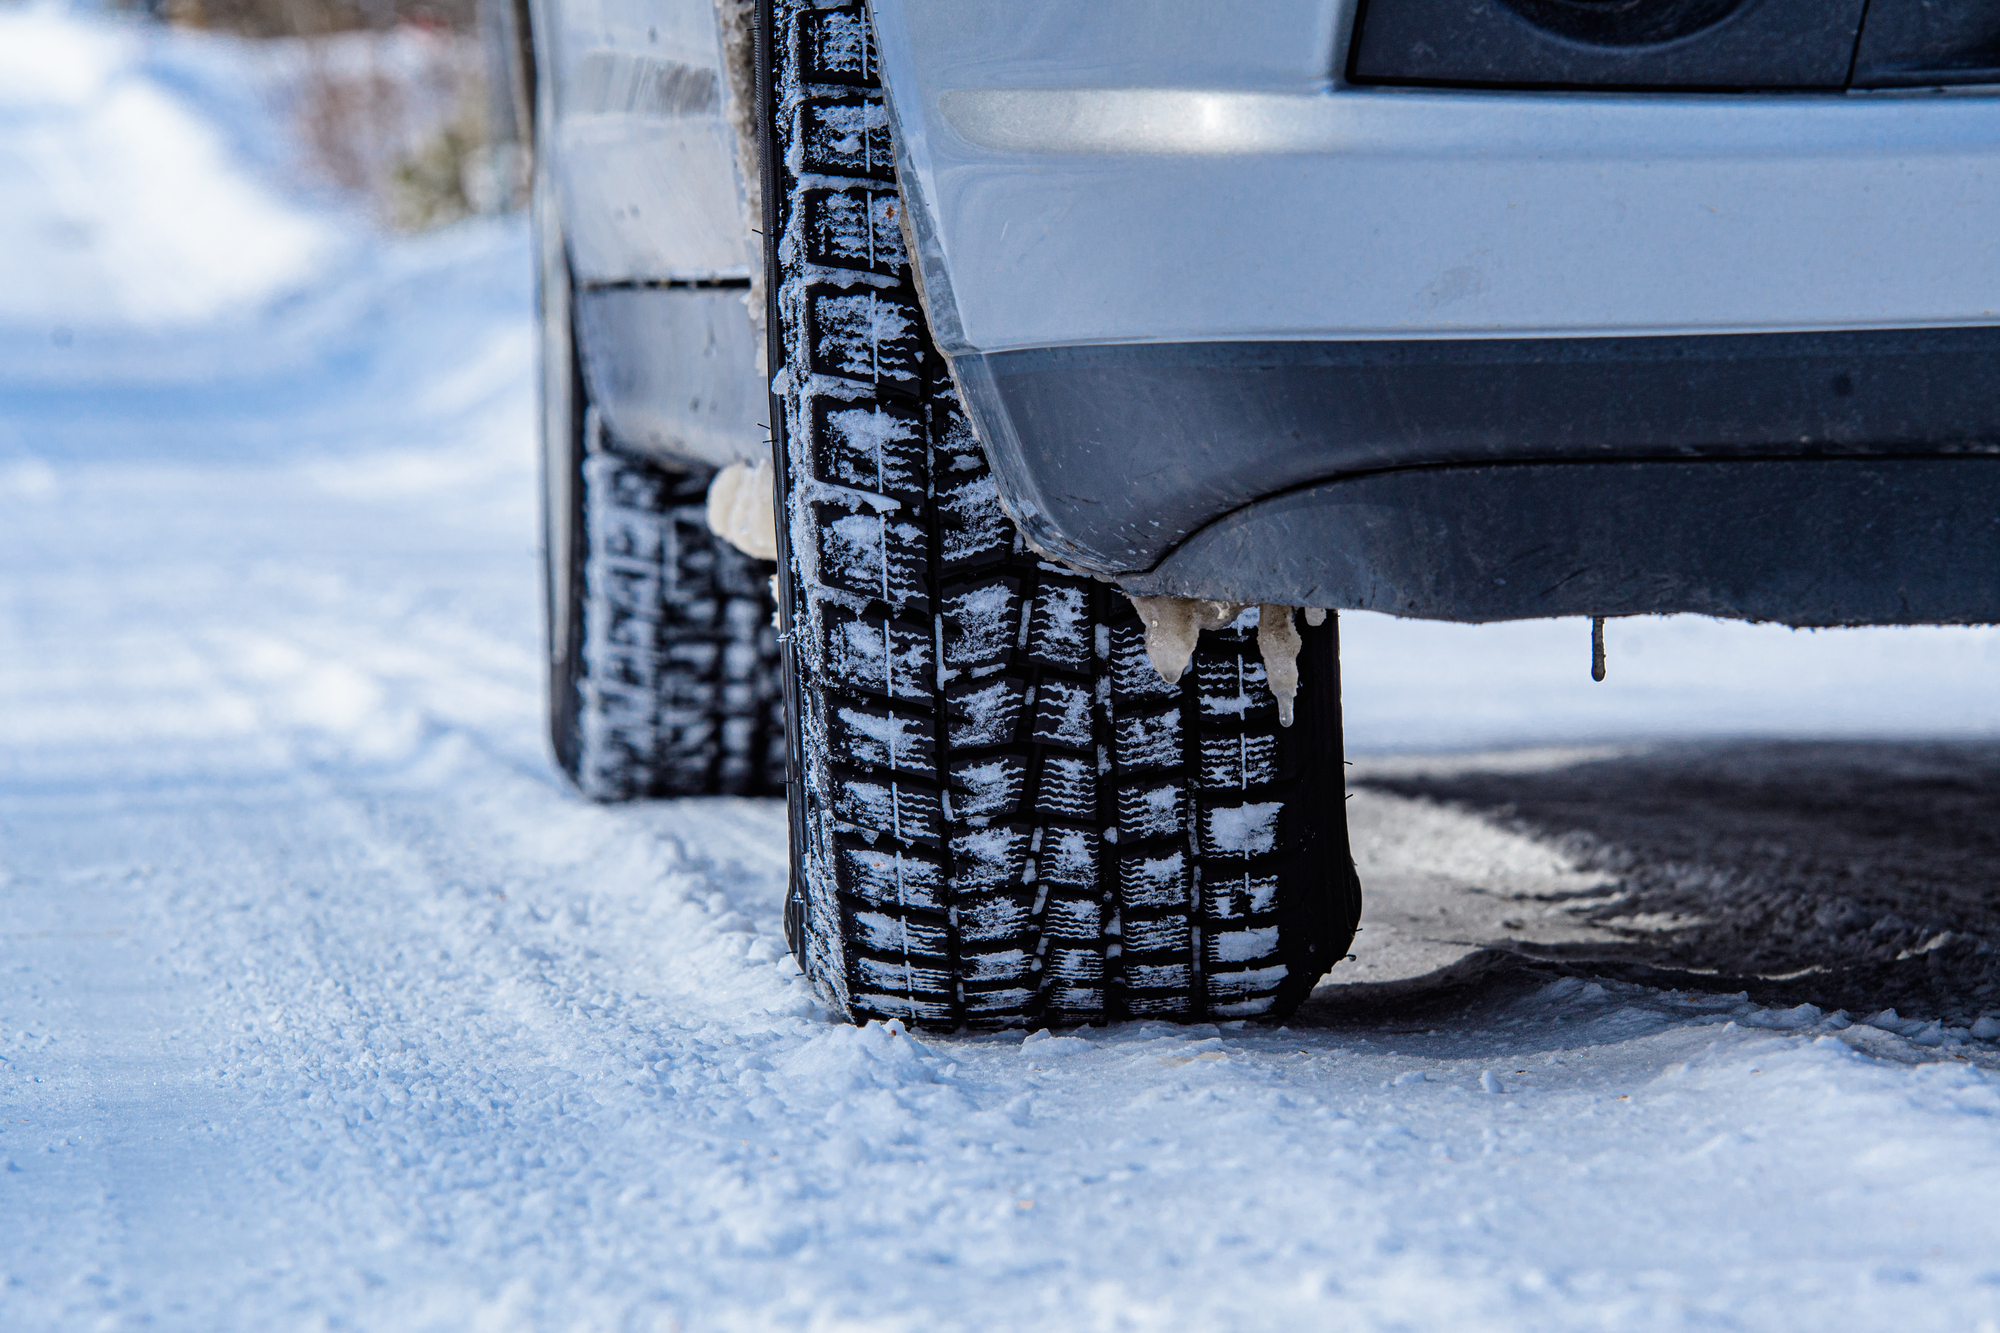 雪道の運転は控えめな速度で一定走行、吹雪中はライトと車間距離を